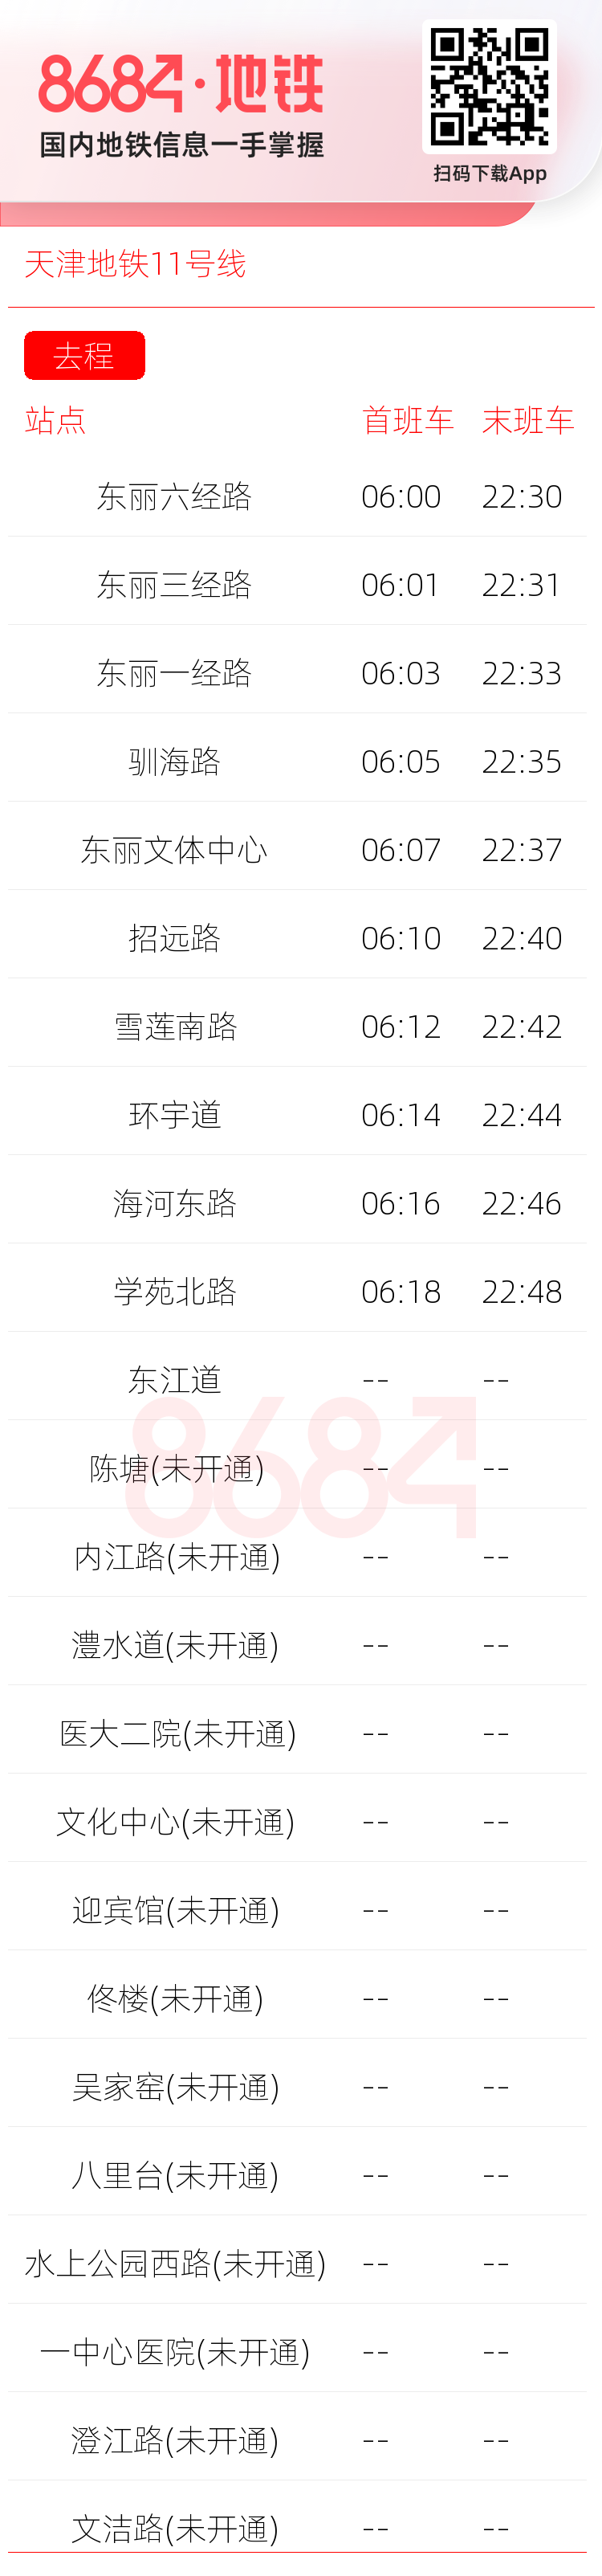 天津地铁11号线运营时间表